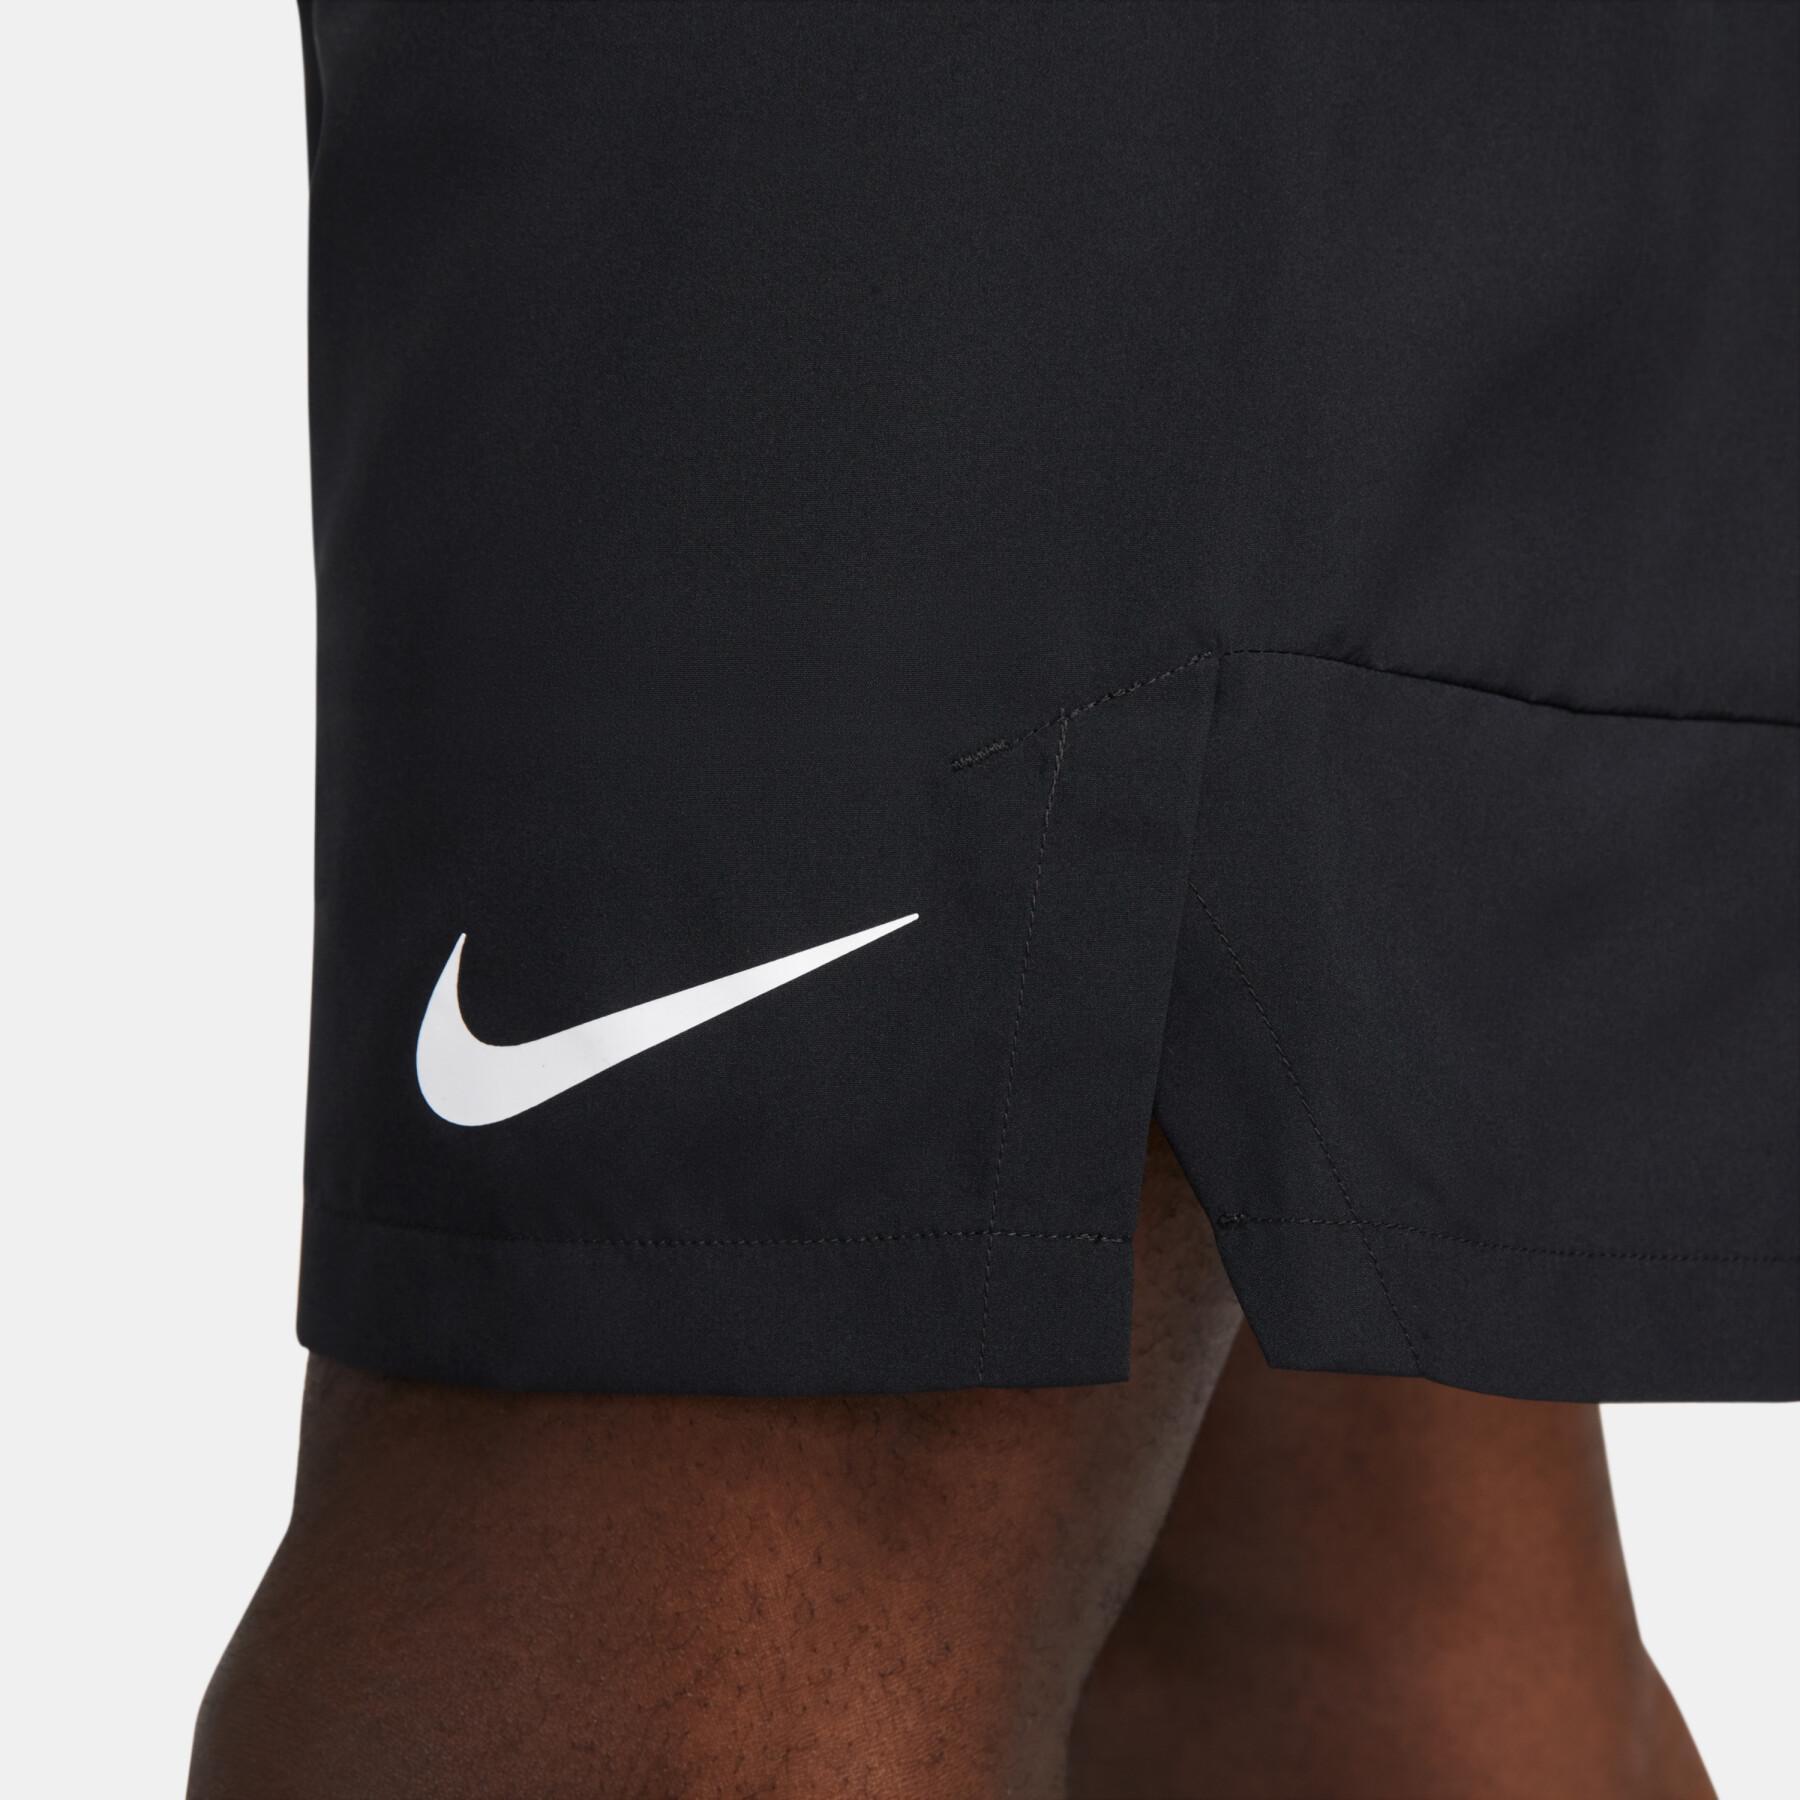 Krótka Nike Dri-Fit FLX WVN 9IN